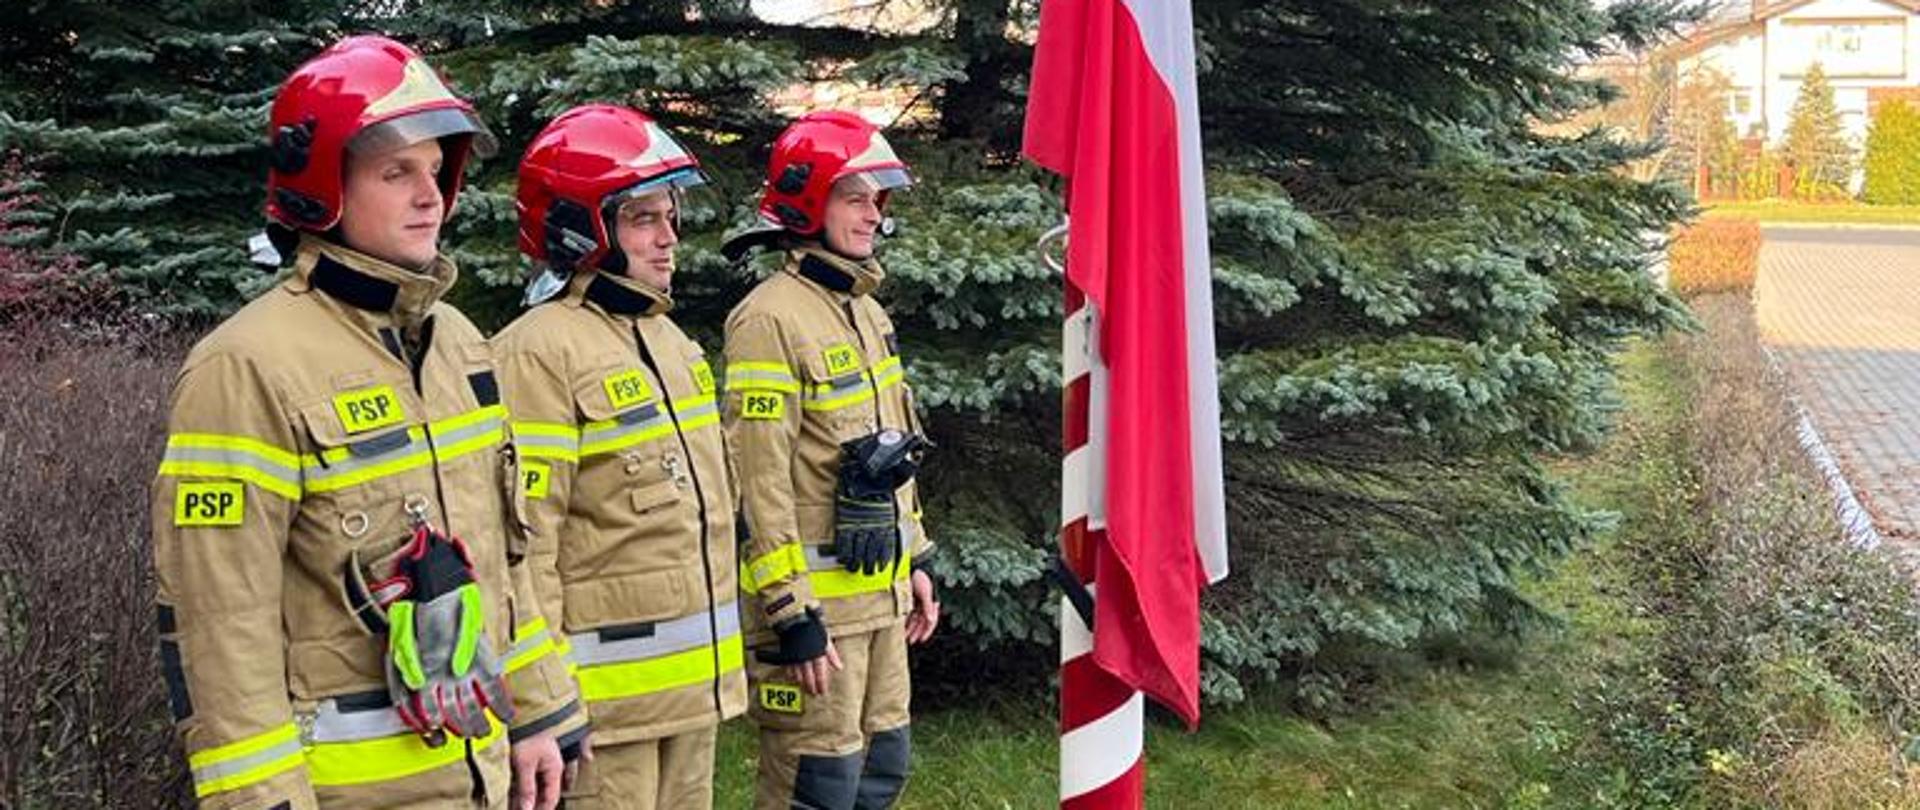 na zdjęciu widzimy trzech strażaków w ubraniach bojowych z hełmami na głowach stojących na baczność przed masztem ze sztandarem w tle drzewa